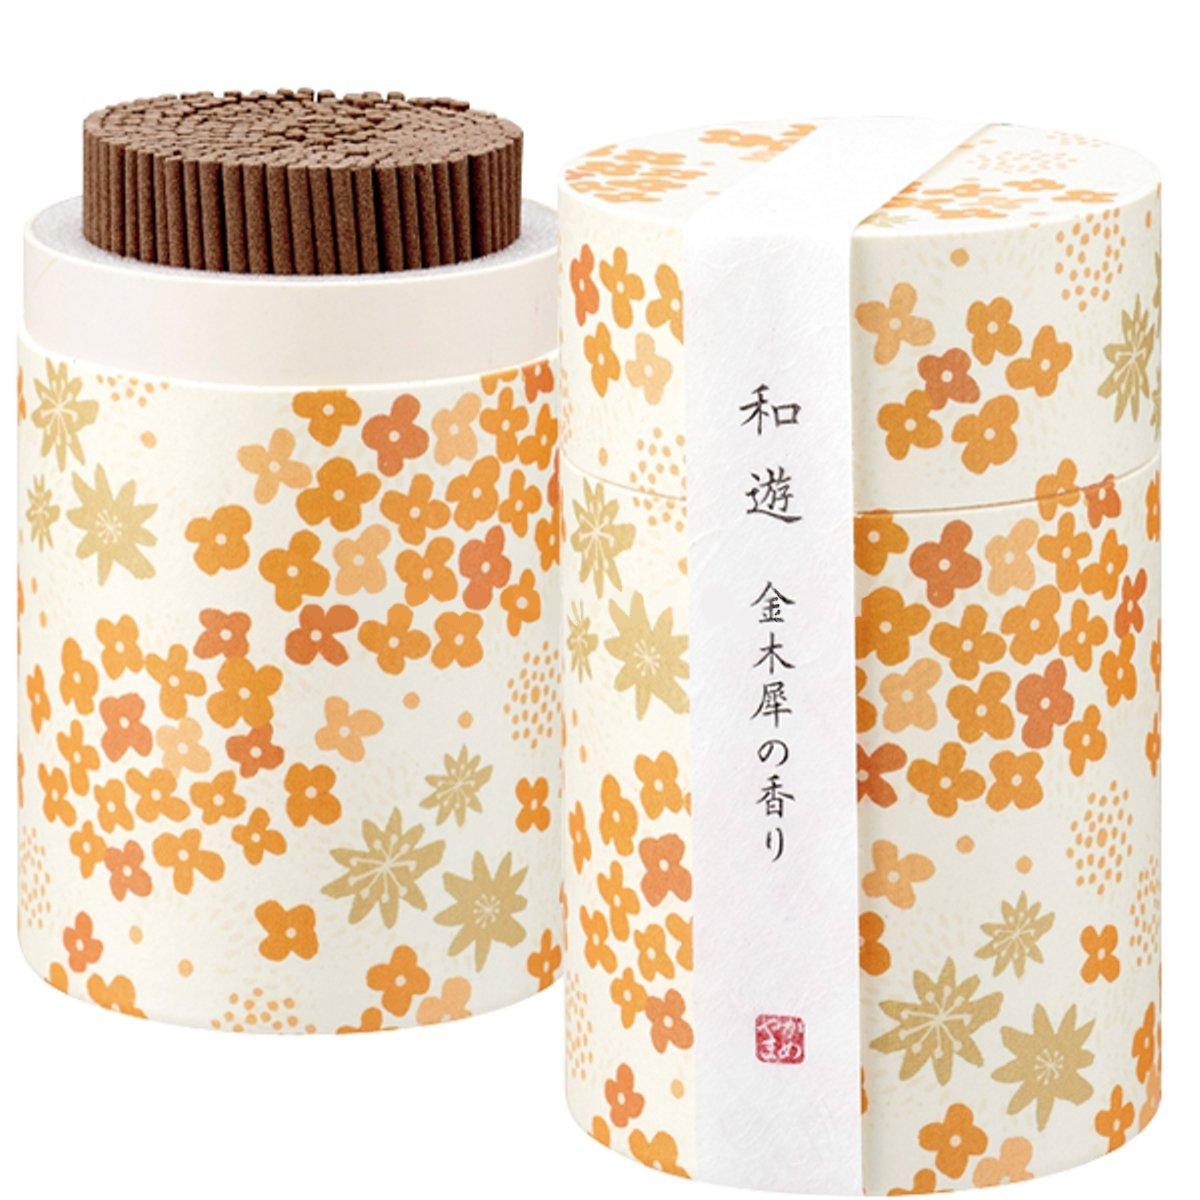 カメヤマ 和遊 香りのお線香(筒箱) 金木犀の香り I20120108